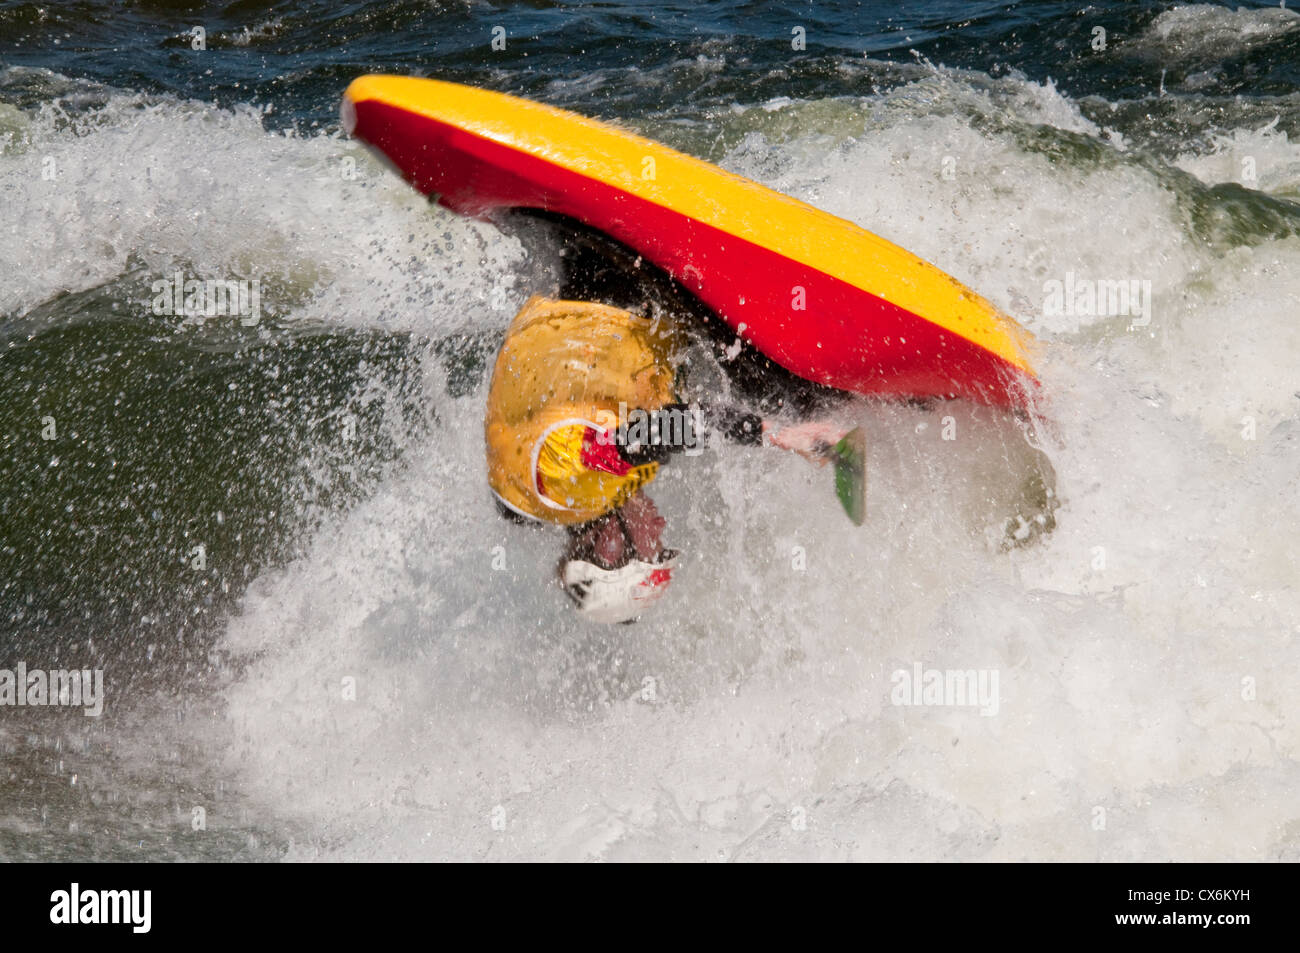 USA, Freestyle kayaker concurrentes dans la cascade de kayak freestyle National Championships en cascade, Colorado Banque D'Images